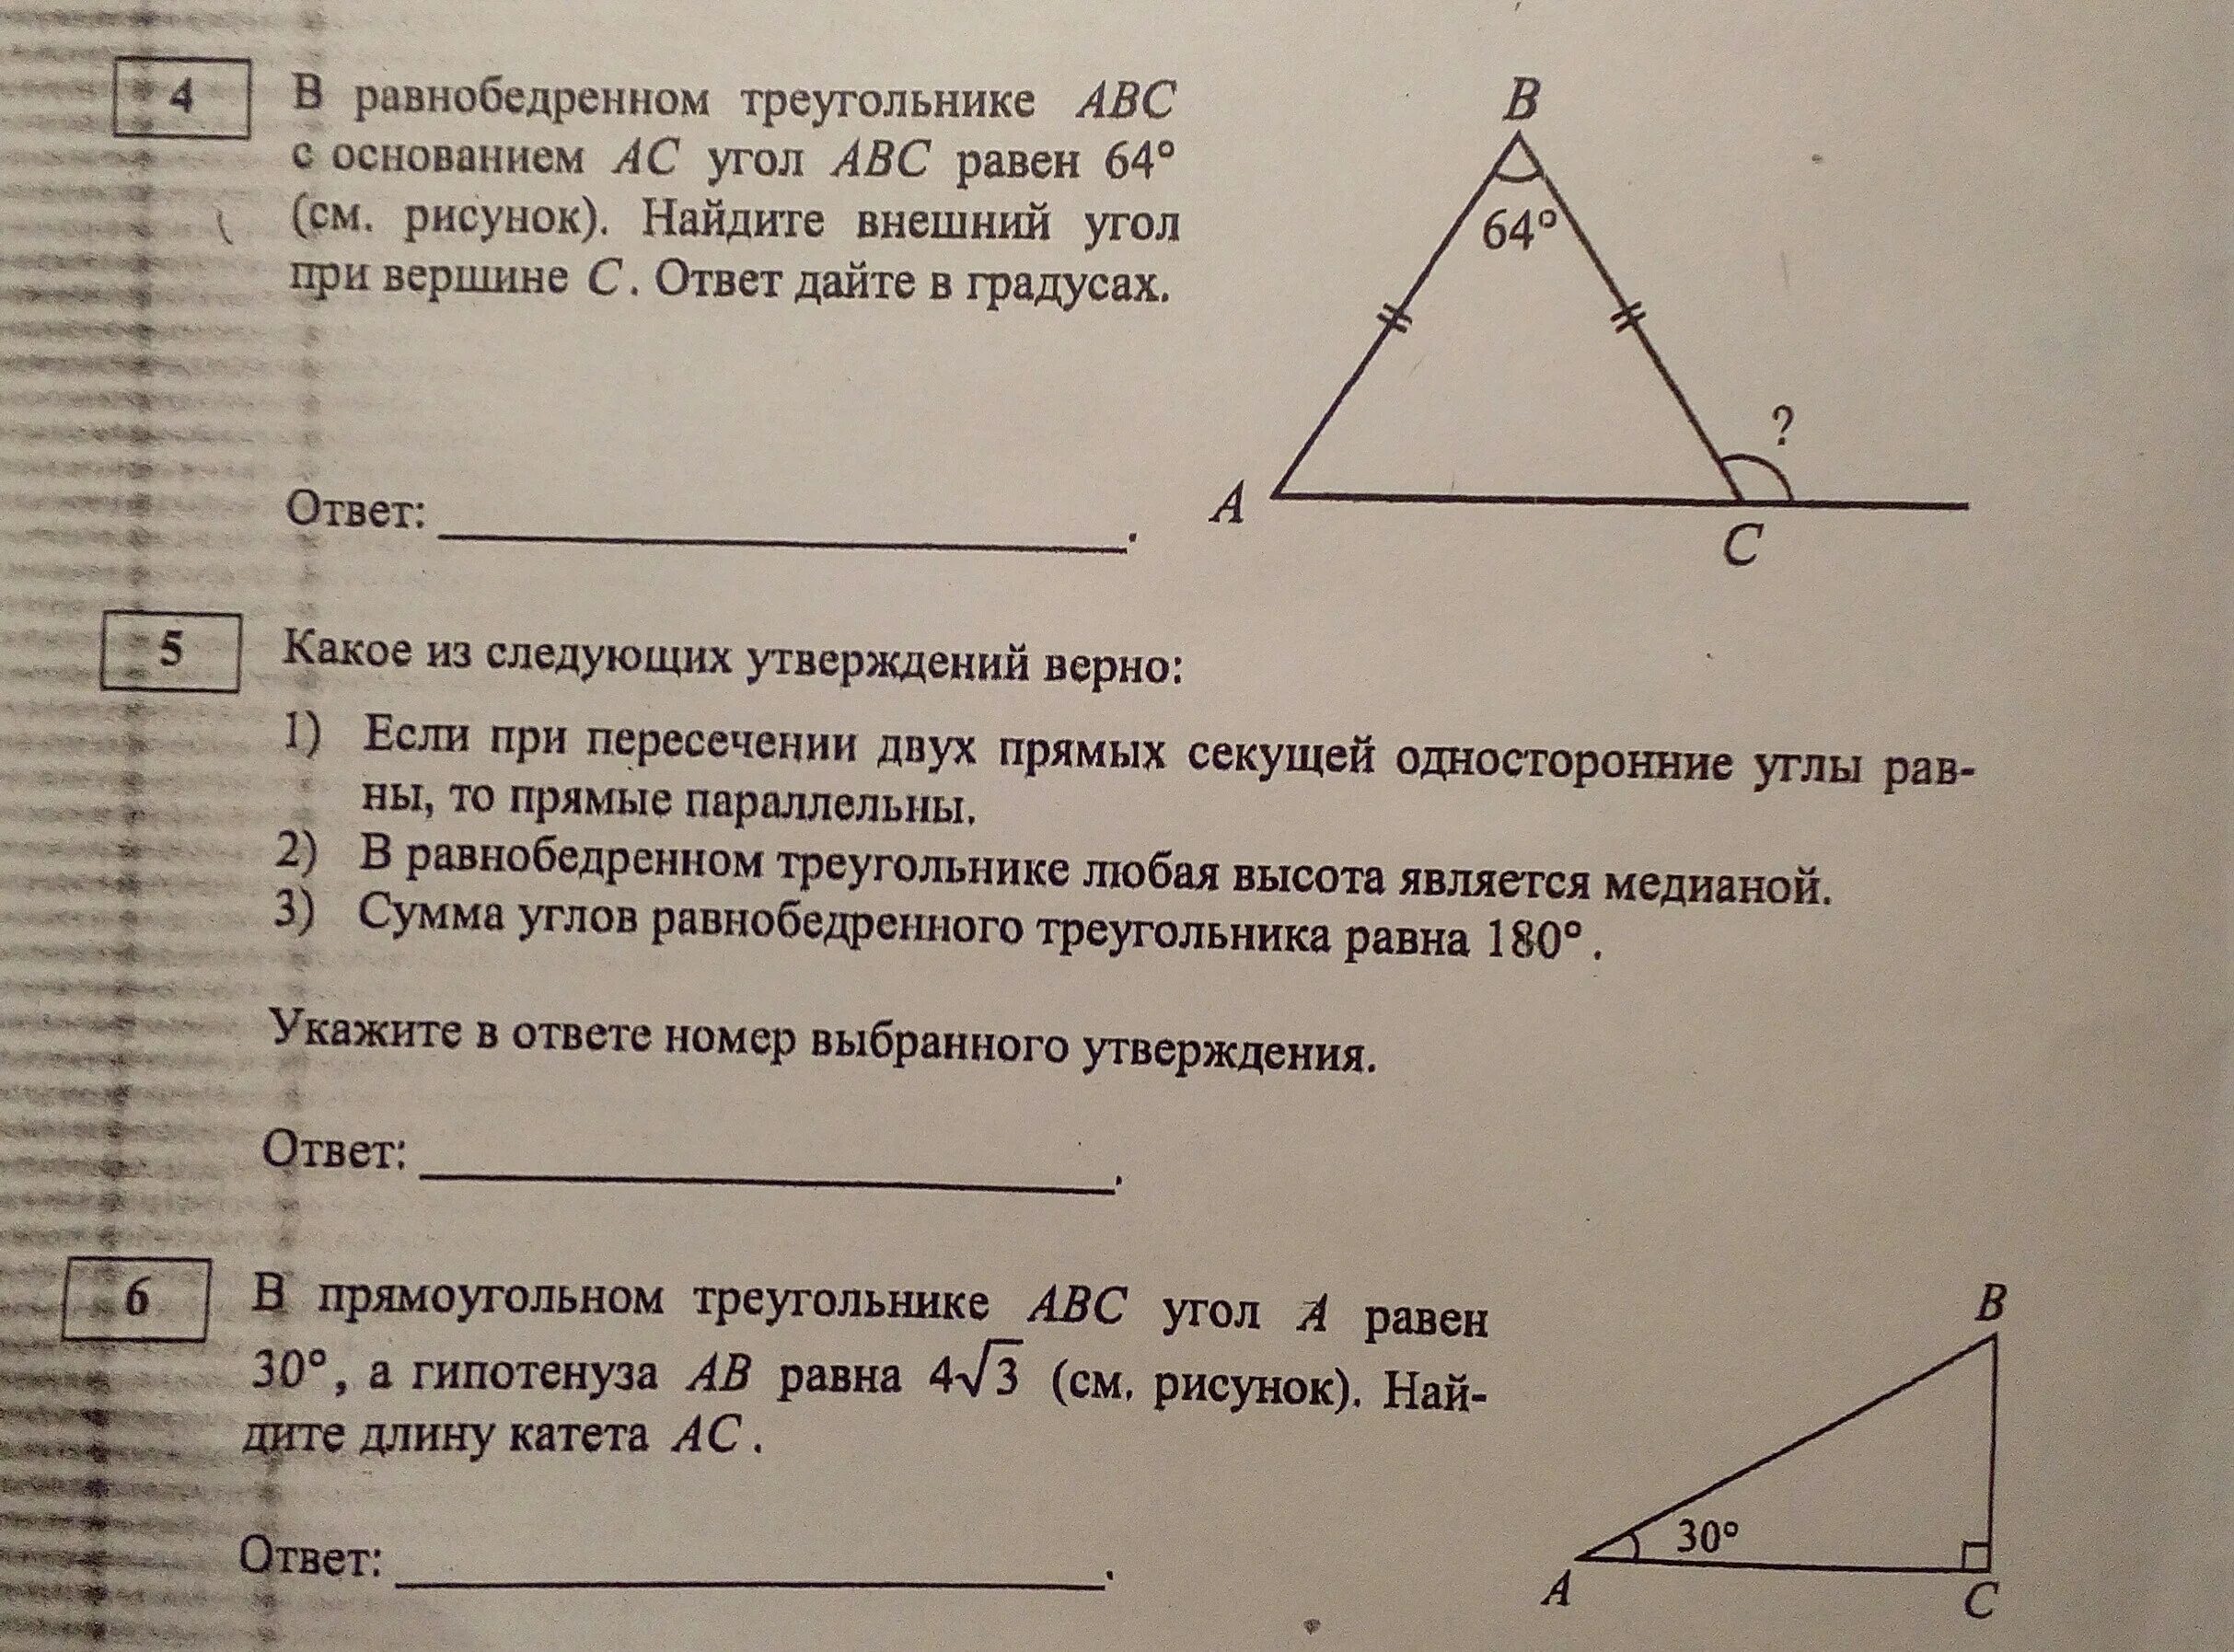 В треугольнике абс угол б равен 72. Внешний угол при вершине в треугольника АВС. Внешний угол при вершине b треугольника. Внешне угол при вершине равнобедренного треугольника. Углы равнобедренного треугольника.